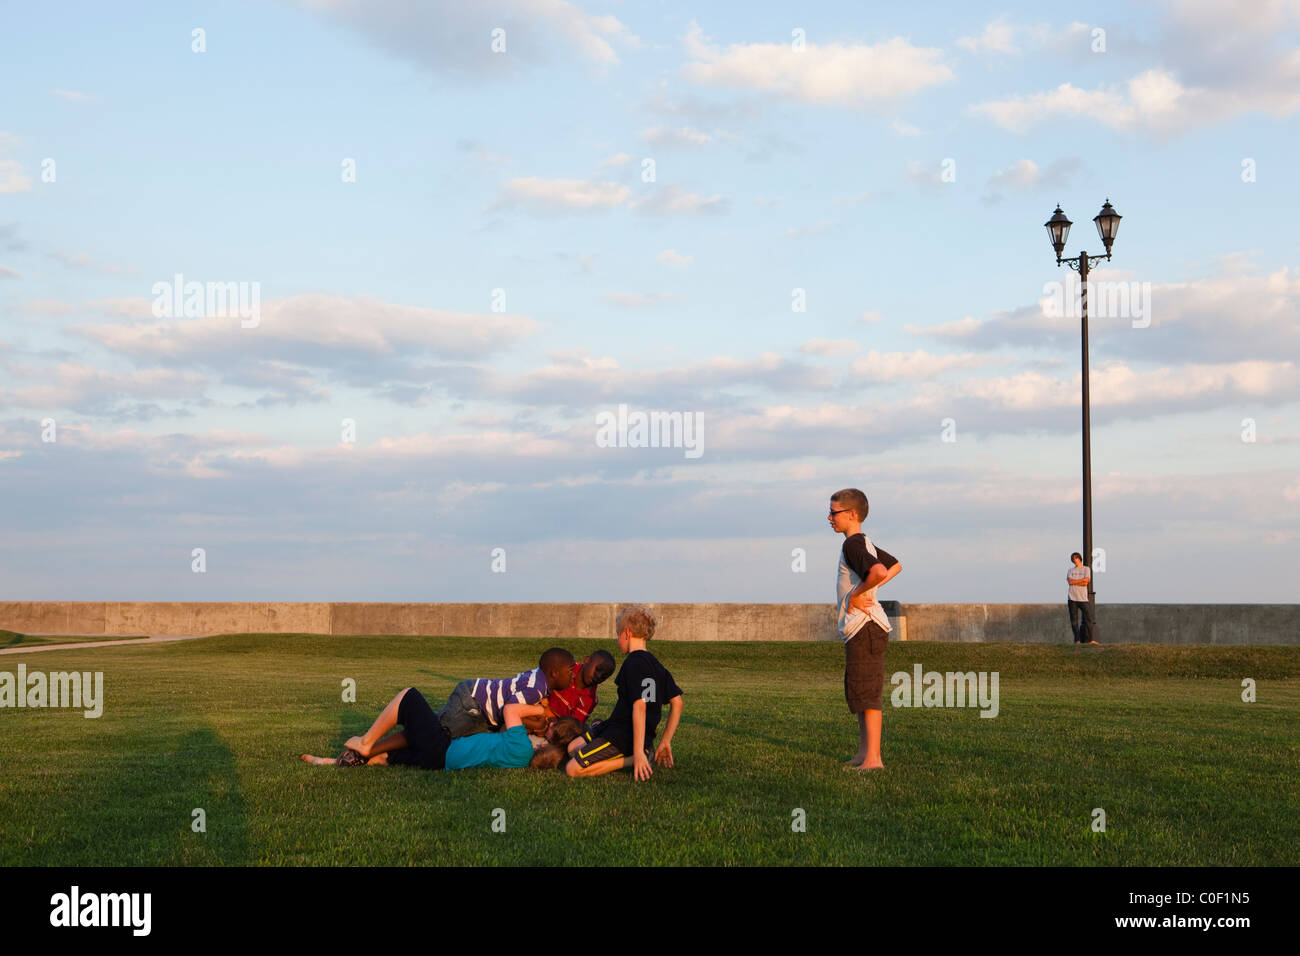 Les enfants jouent sur la pelouse Banque D'Images